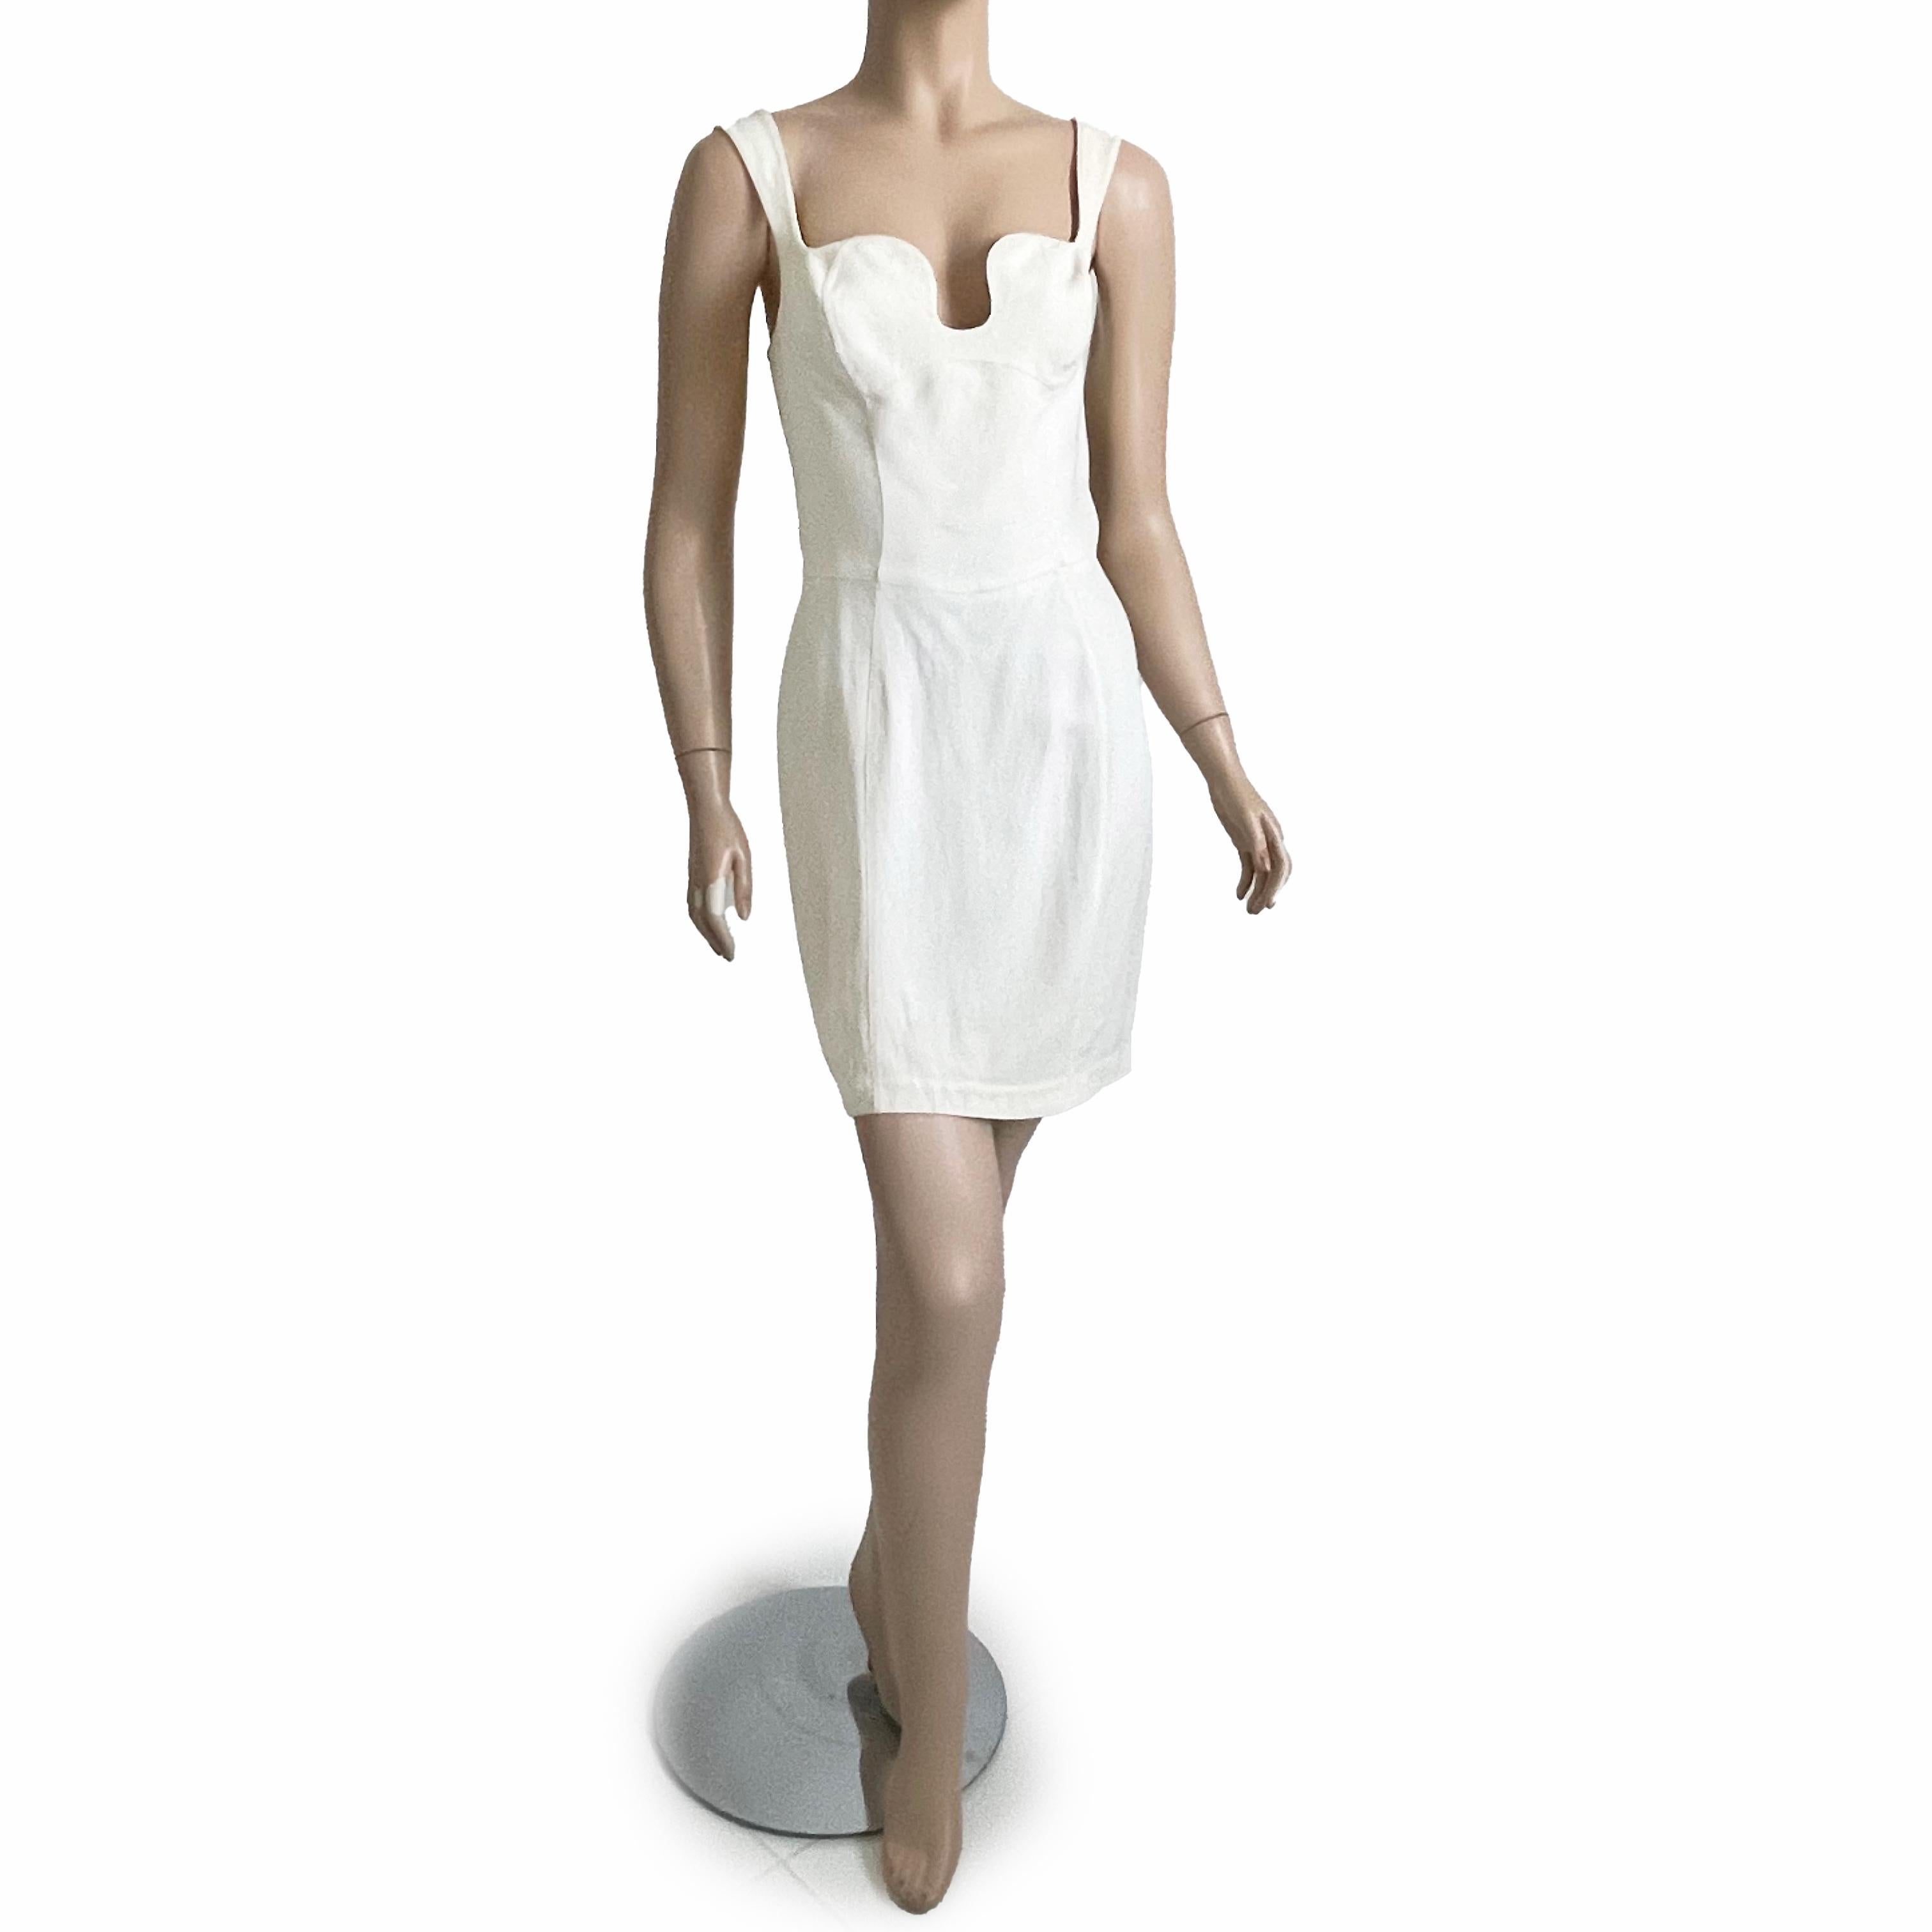 Wir lieben dieses Cocktailkleid aus Kreppstoff von Thierry Mugler! Es ist aus weißem Crêpe-Stoff gefertigt und hat ein skulpturales Mieder und einen tulpenförmigen Rock!

Fabelhaft und schick, perfekt für die wärmeren Monate und so einfach zu tragen